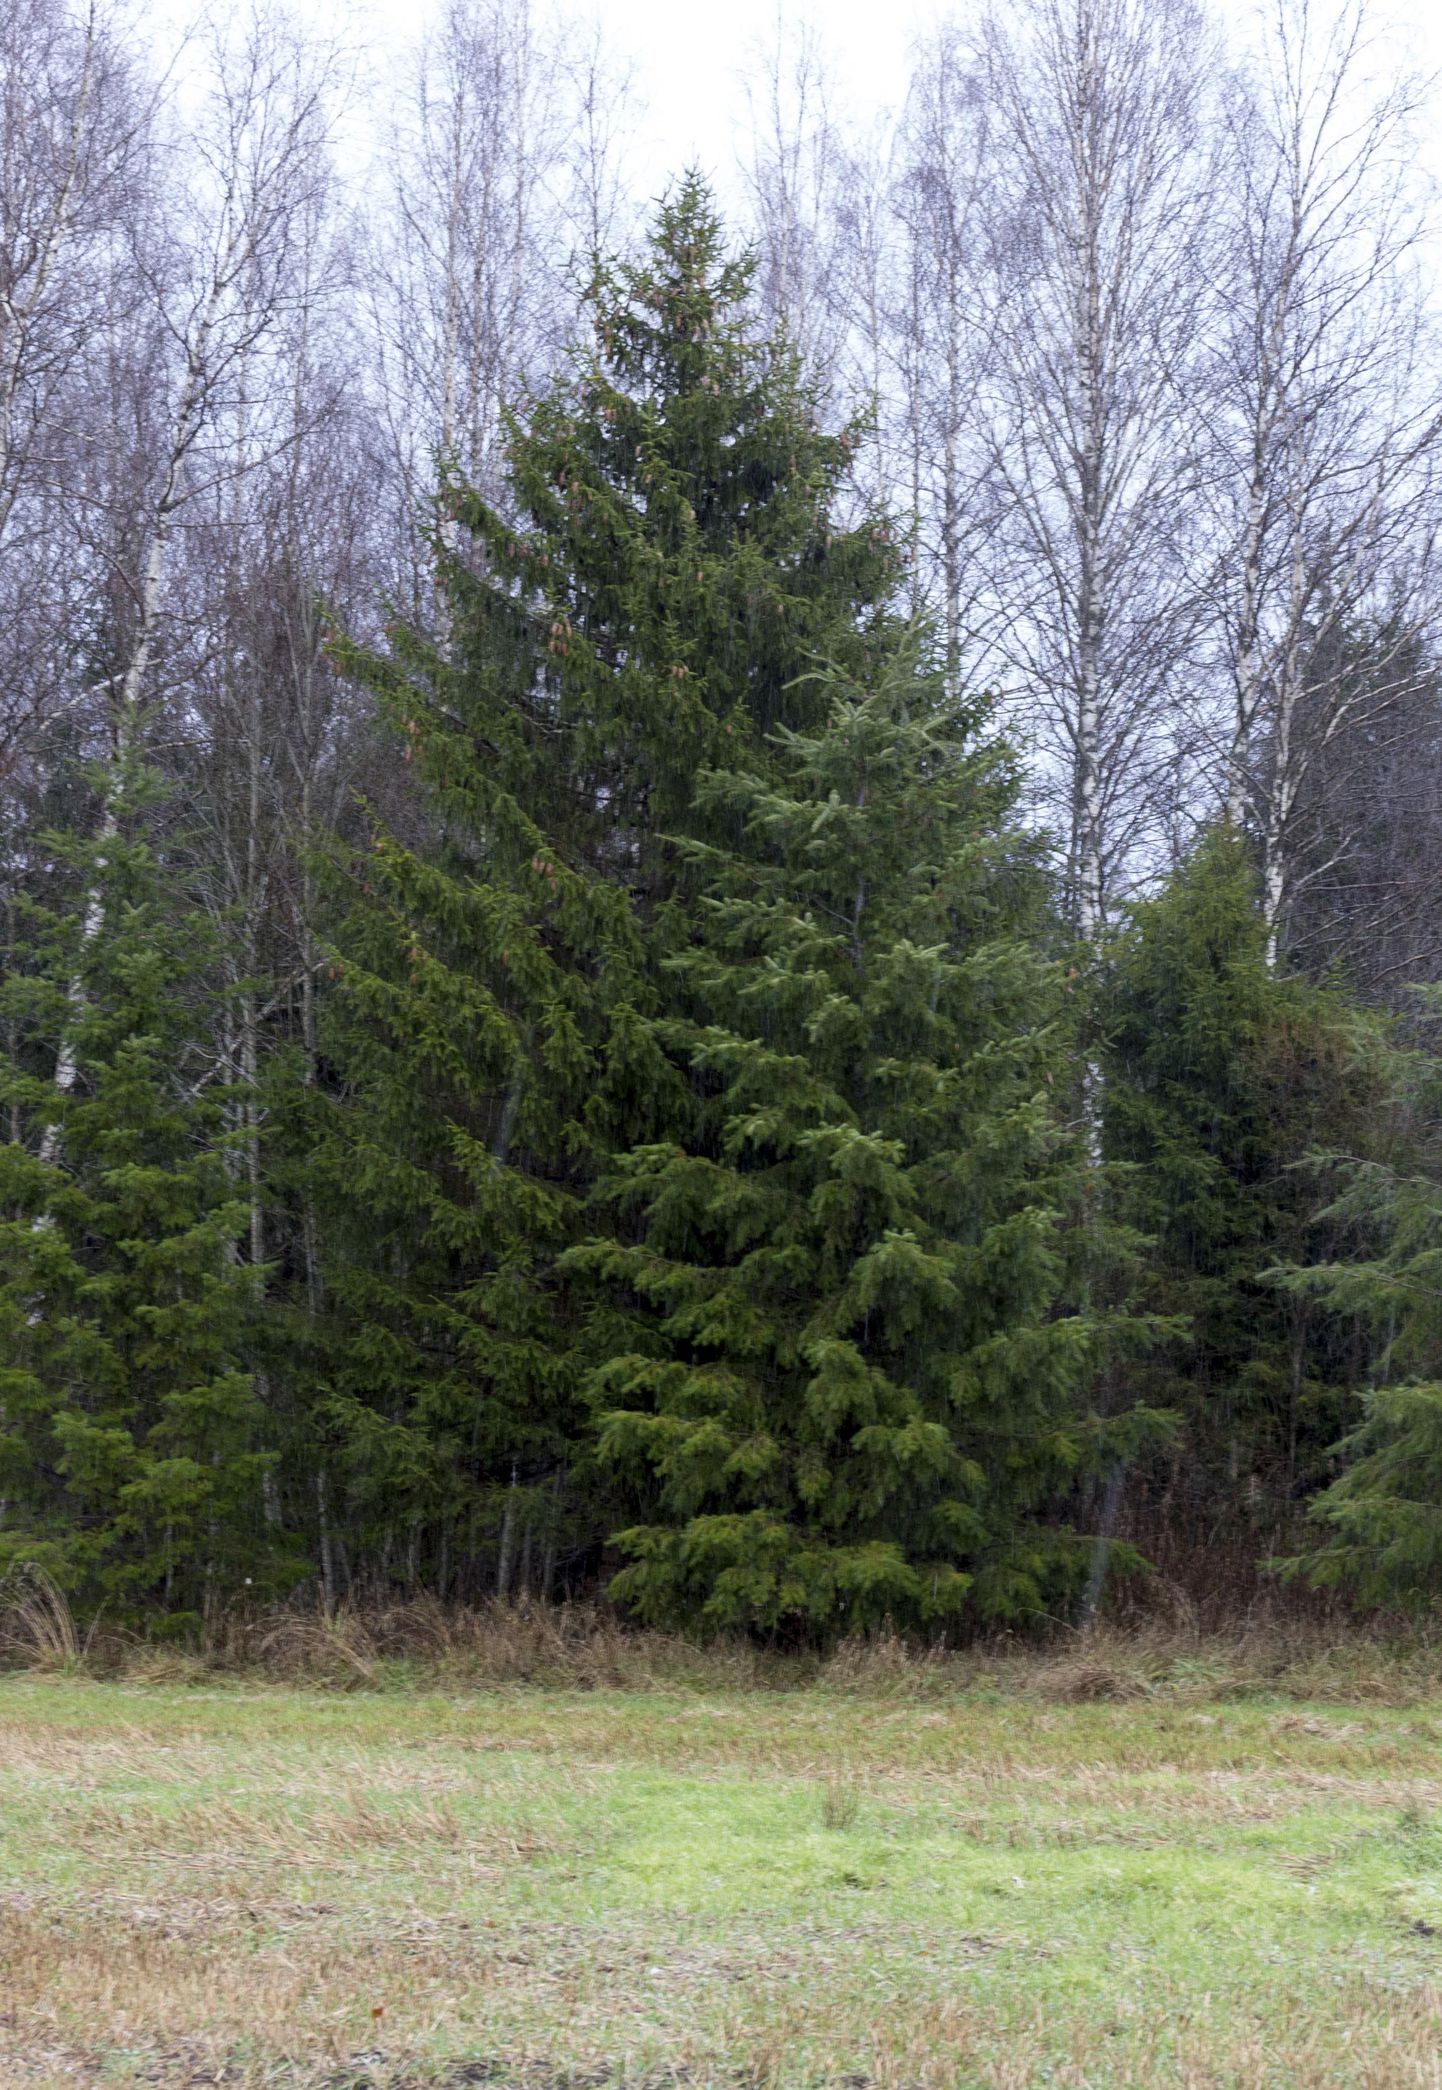 Viljandi jõulupuu on kasvanud teistest kuuskedest kõrgemaks ja kaunimaks.